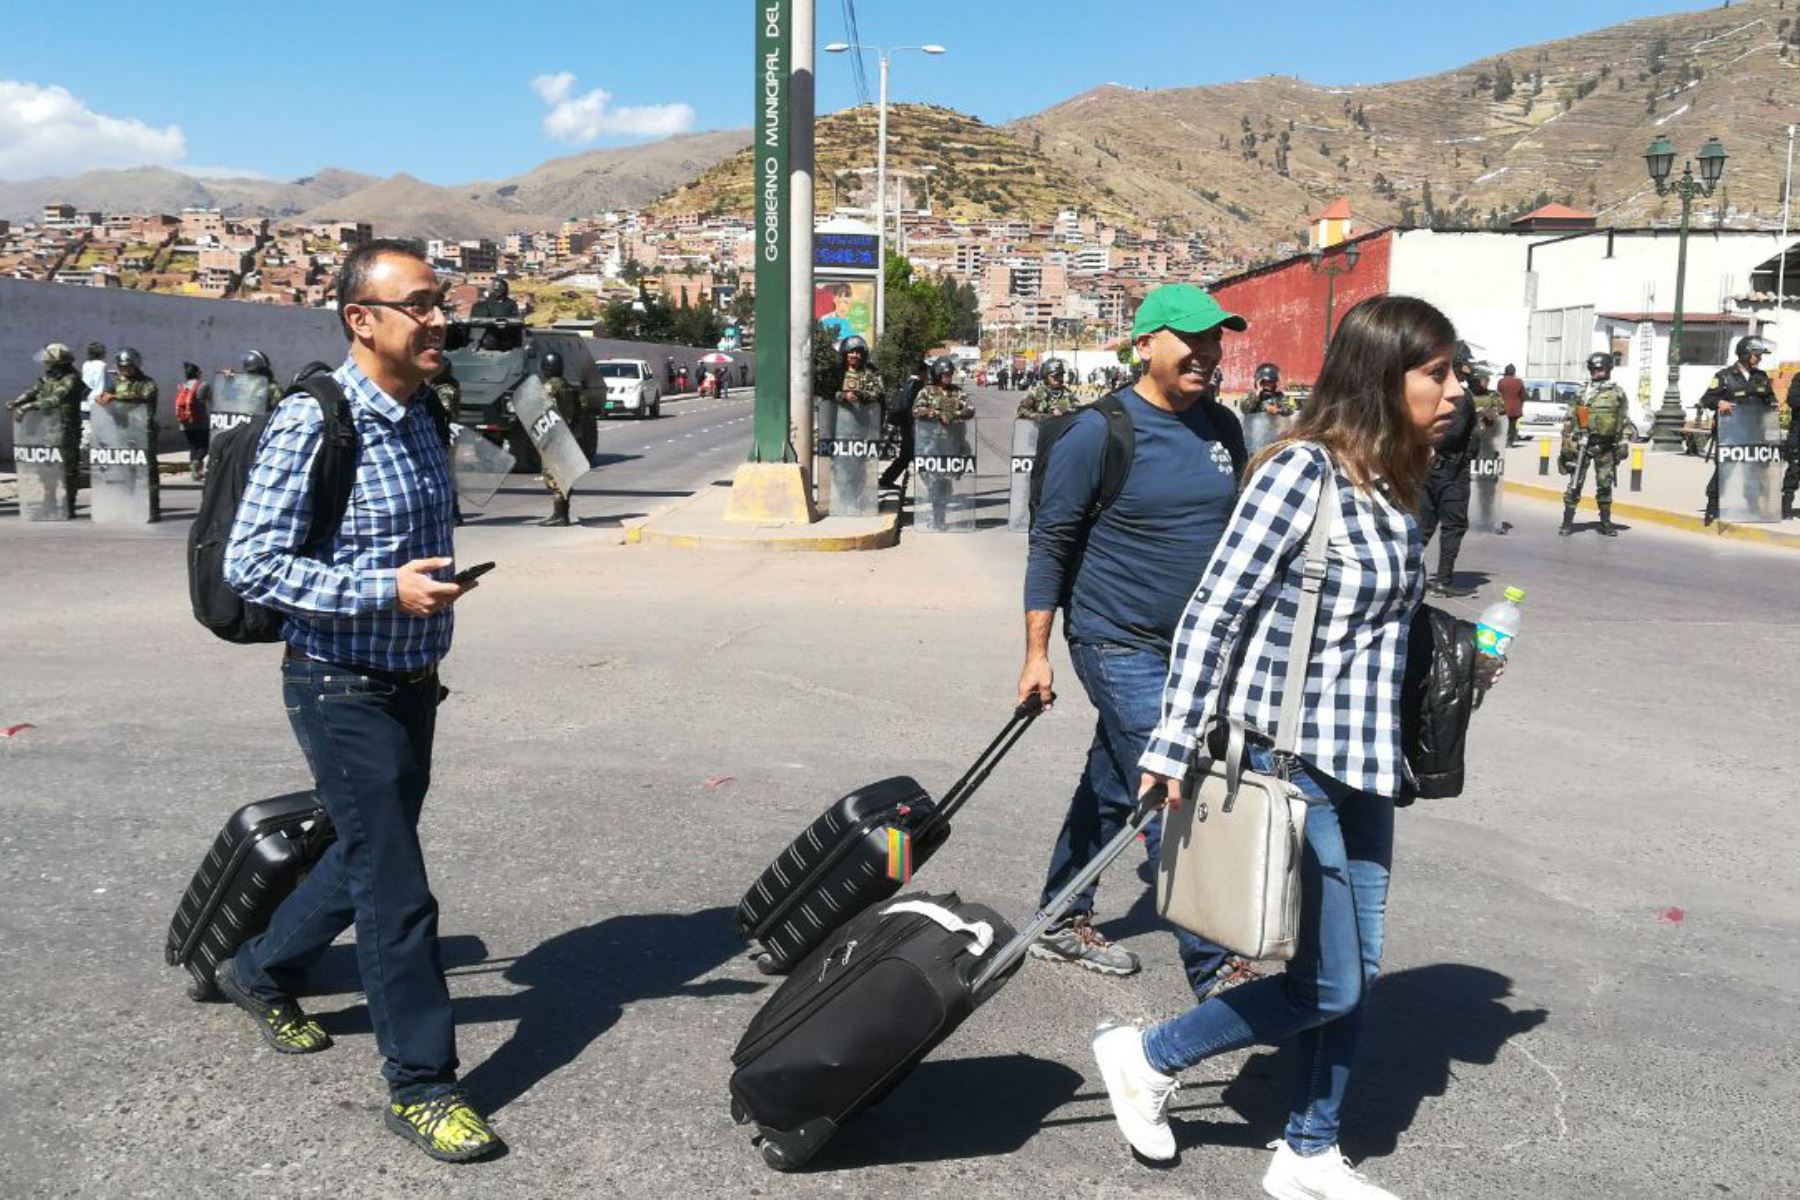 El Ministerio de Comercio Exterior y Turismo (Mincetur), a través de la Red de Protección al Turista, implementó corredores turísticos seguros desde los aeropuertos hasta el centro histórico de las ciudades de Cusco, Arequipa, Puno y Tacna, a fin de salvaguardar la integridad física de los turistas nacionales y extranjeros frente a las protestas sociales.